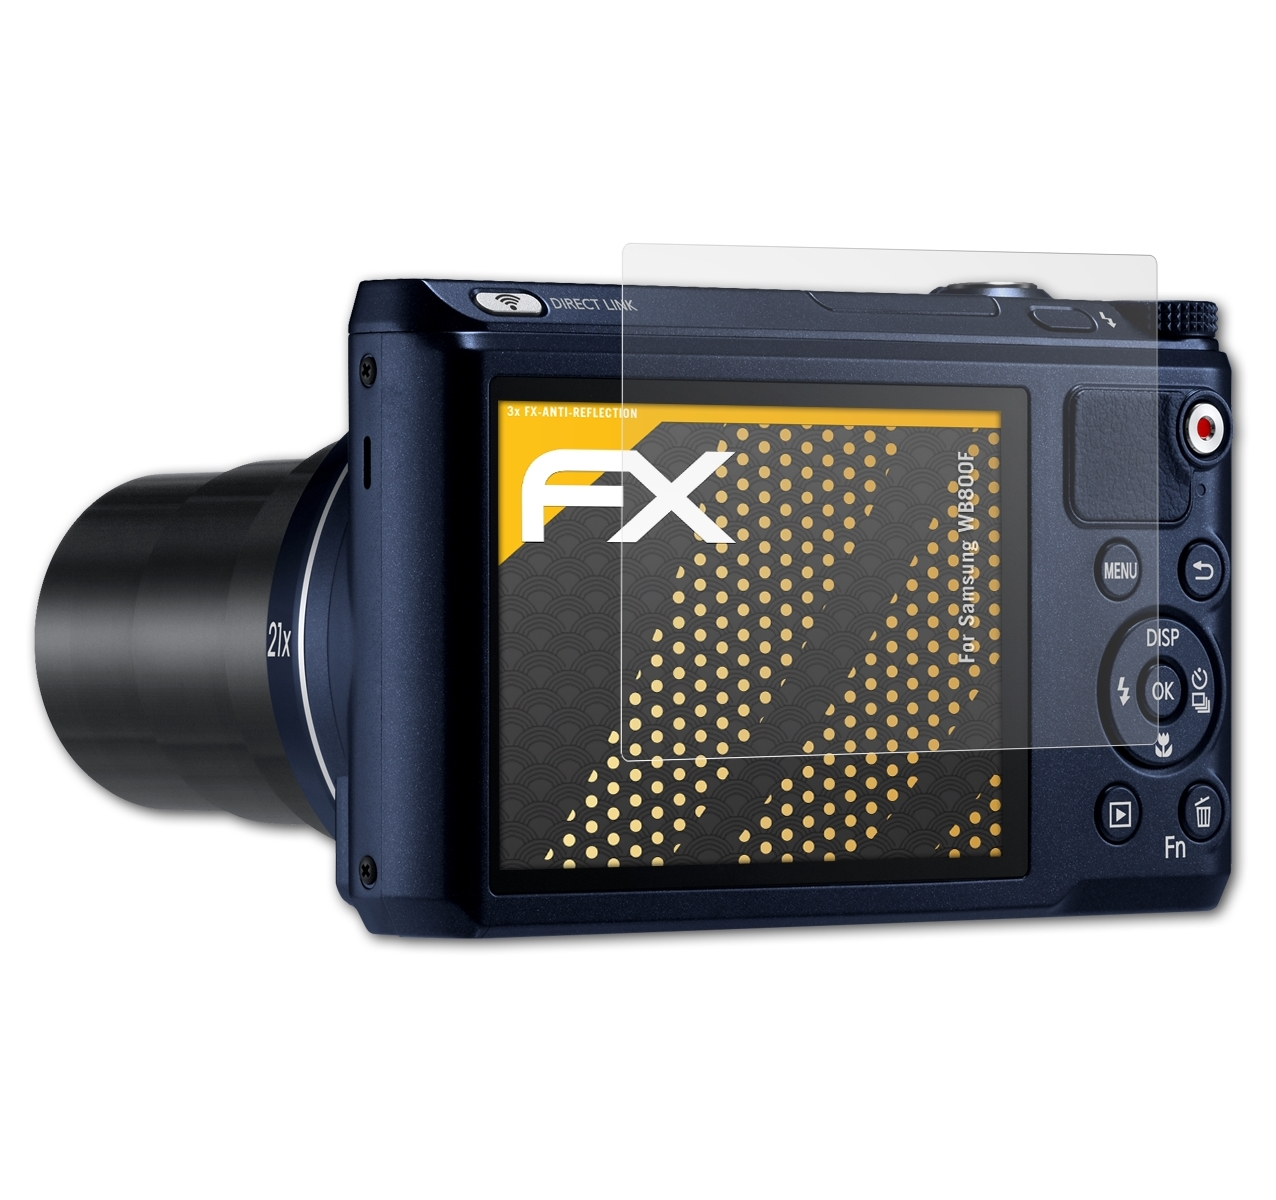 FX-Antireflex 3x Samsung ATFOLIX Displayschutz(für WB800F)